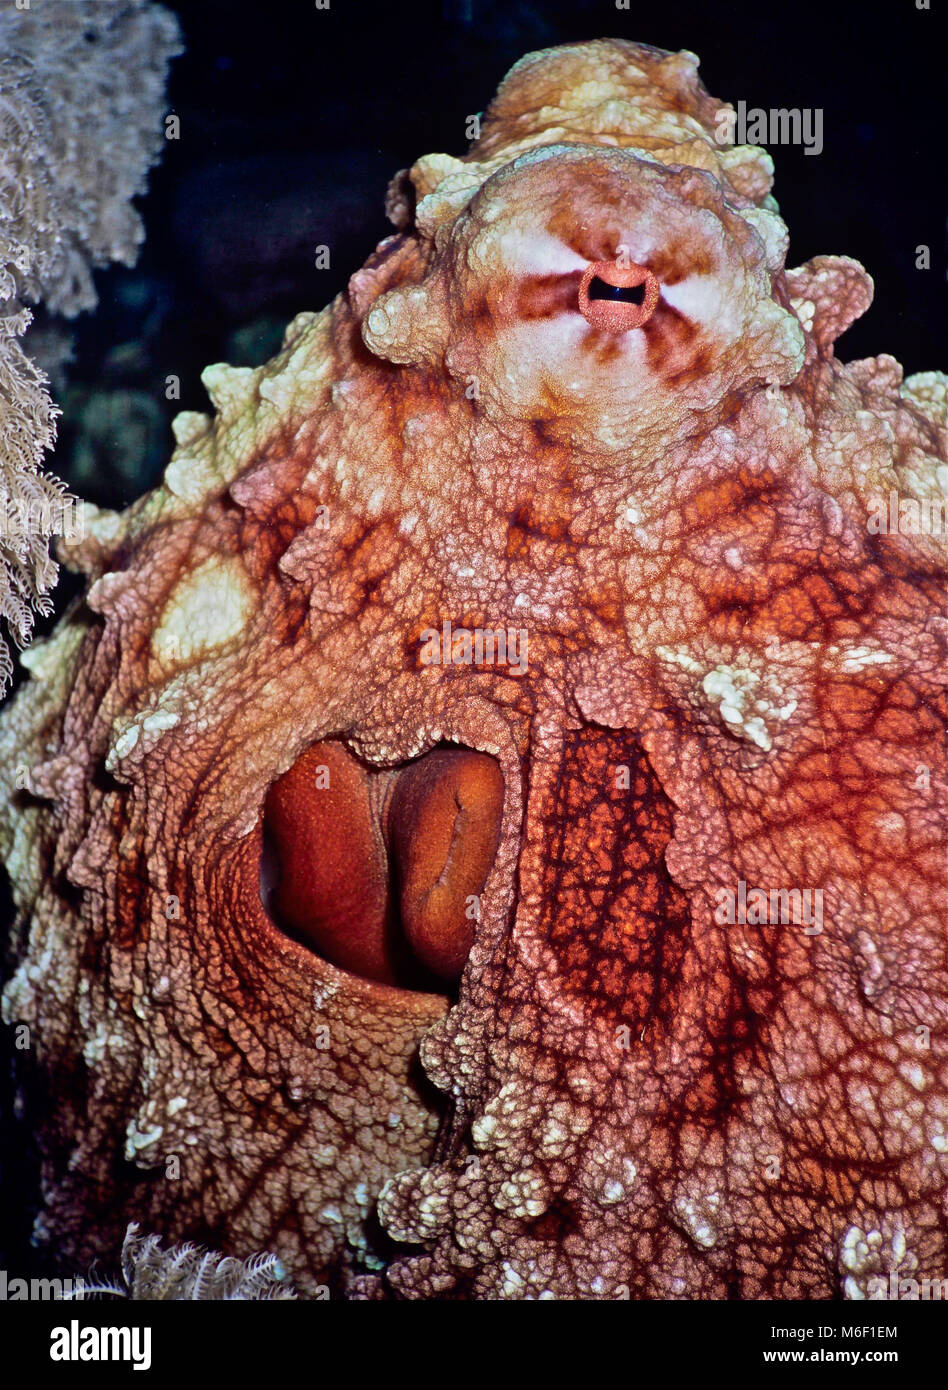 Big Red polpi (Octopus cyaneus: 40 cms.) riparo durante il giorno in crepacci, venendo al feed di notte. È strano che il nome specifico è cyaneus, il che implica che l'animale è di colore blu. Alcune segnalazioni indicano che la specie è stato chiamato da un museo campione che avevano acceso in blu durante la conservazione. Polipi sono maestri di camuffamento e può cambiare il colore e la consistenza della pelle rapidamente e frequentemente. Mentre la maggior parte dei molluschi non sono conosciuti per la loro intelligenza, polipi sono molto intelligenti. Questo uno ha ottenuto molto utilizzato per la mia presenza e fissò - vedere occhio al top. Fotografato nel Mar Rosso egiziano Foto Stock